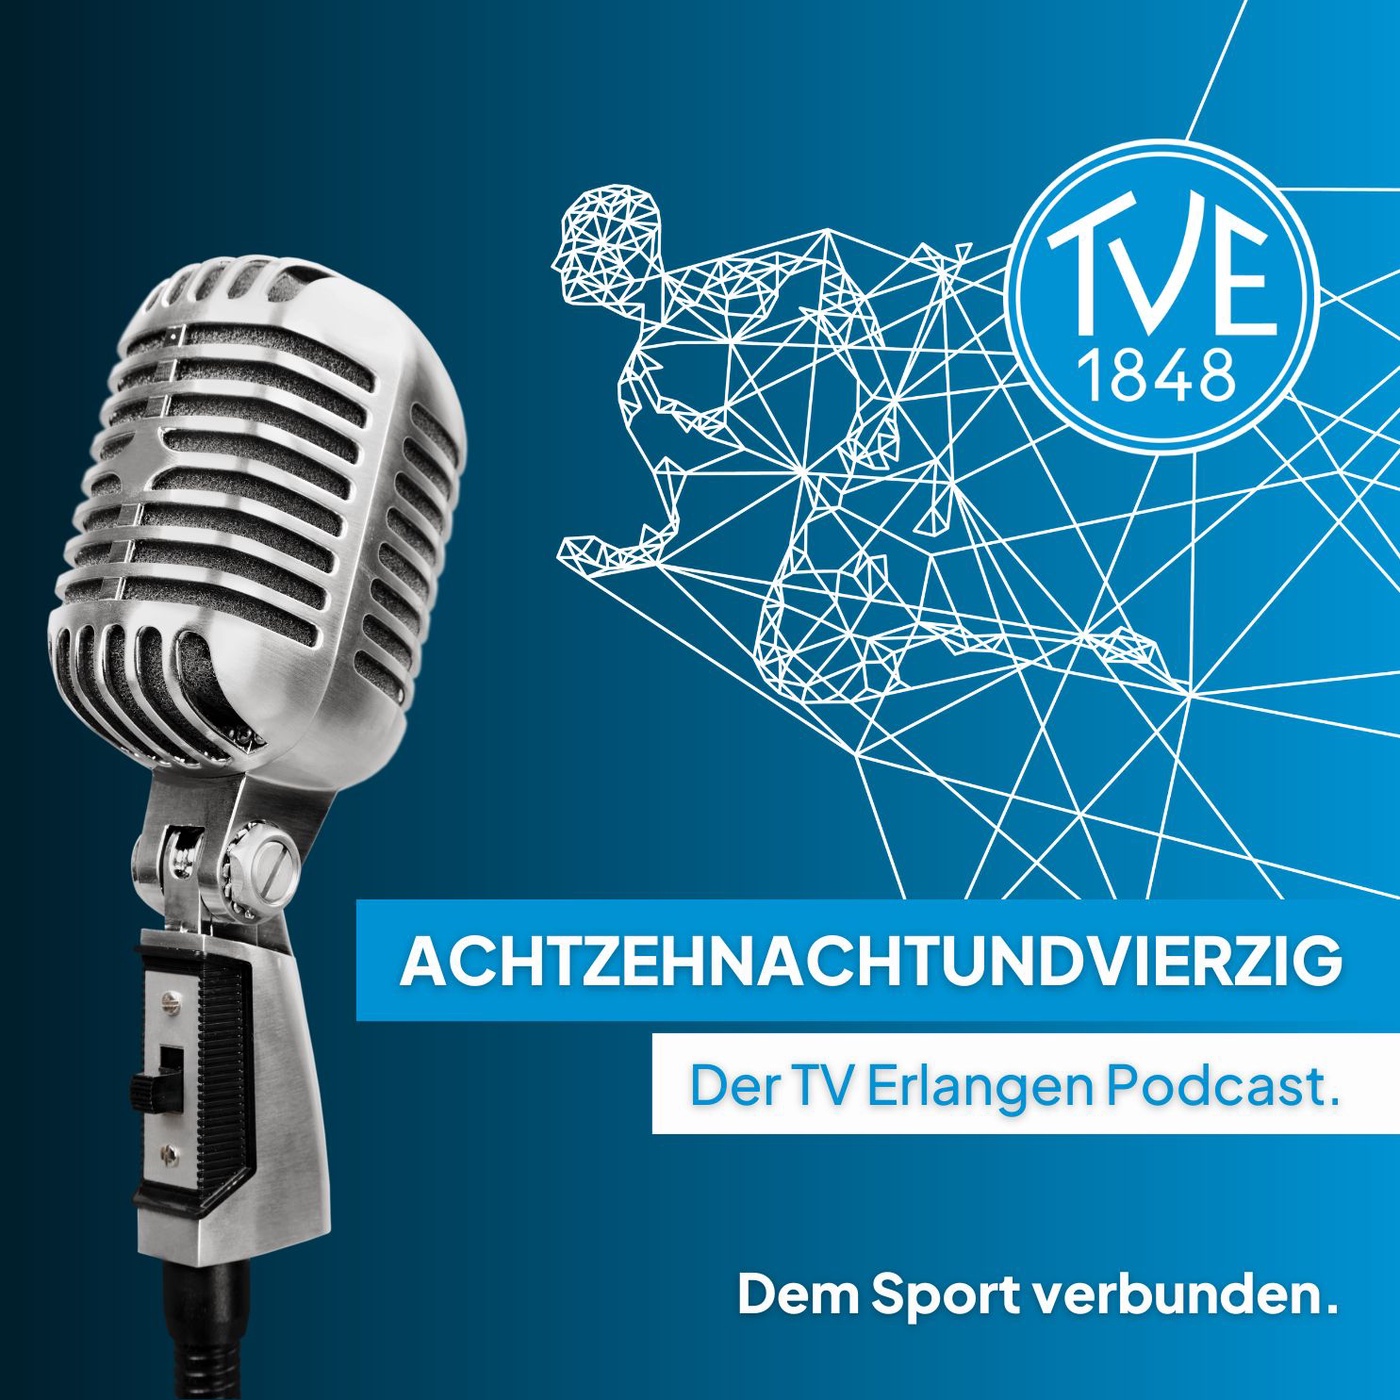 ACHTZEHNACHTUNDVIERZIG - Der TV Erlangen Podcast.